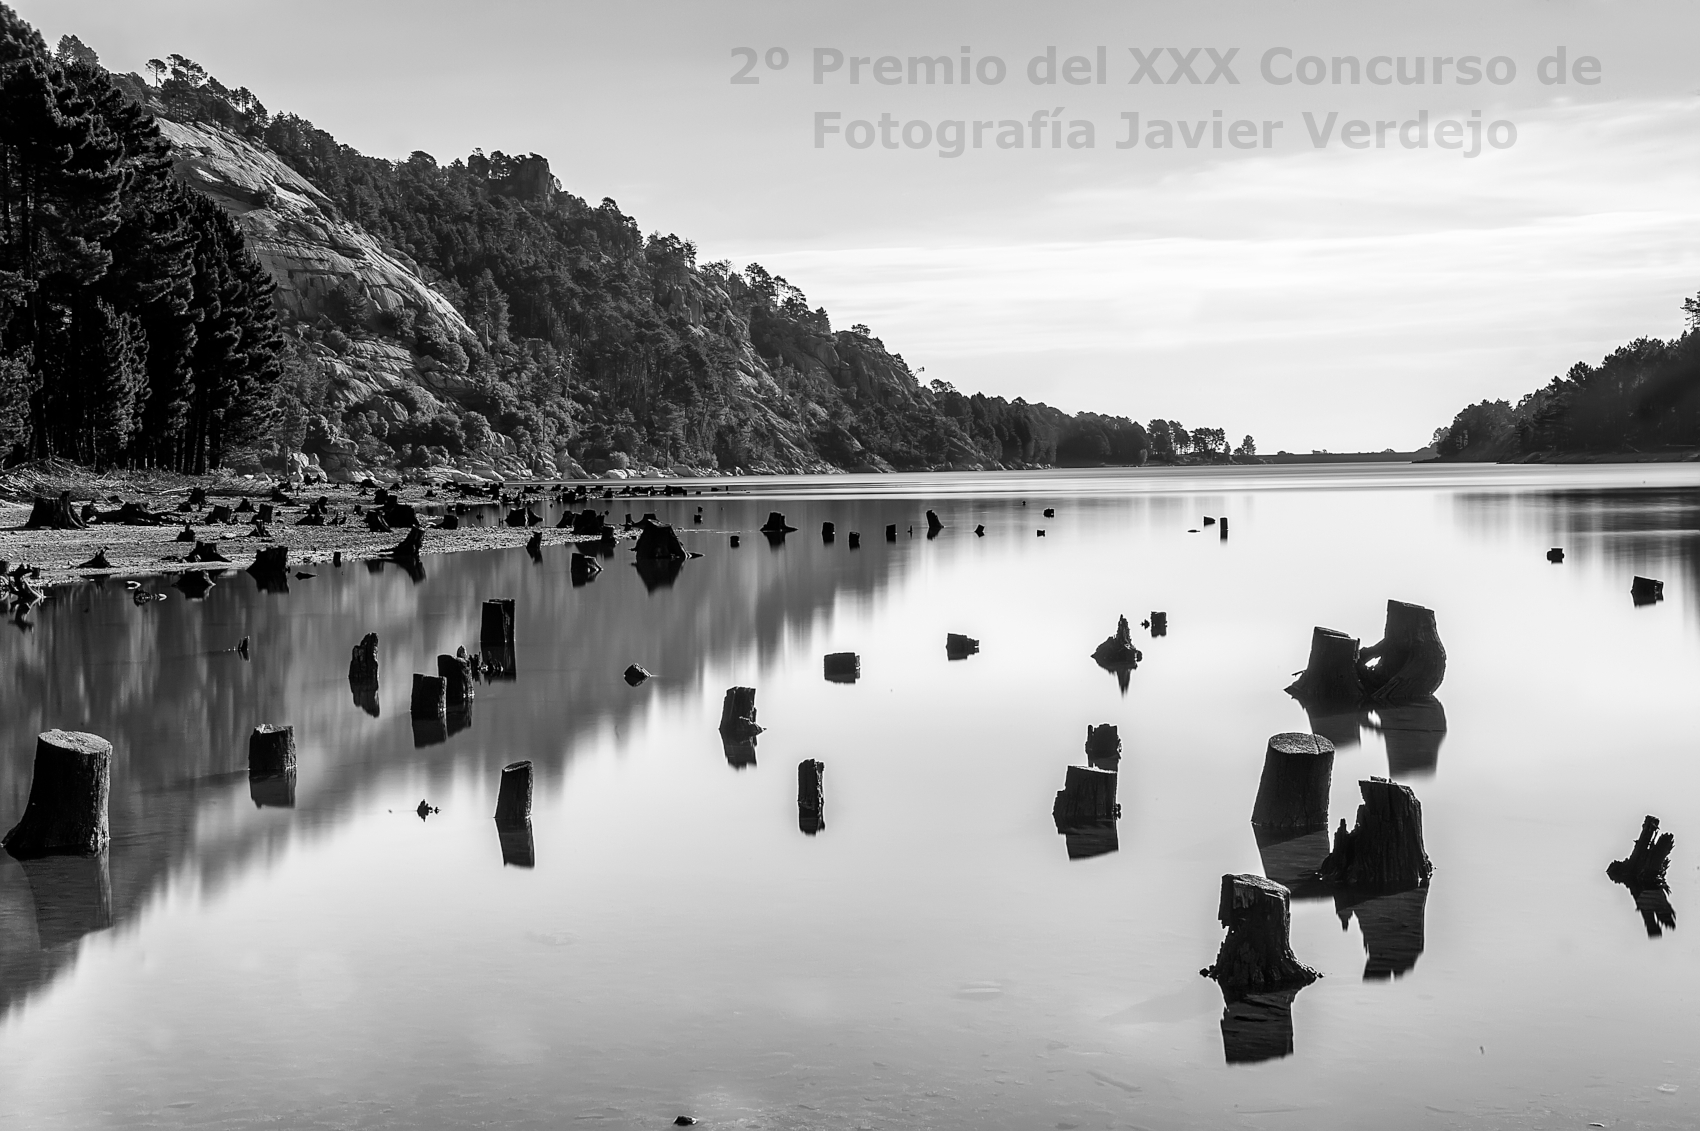 2º Premio del XXX Concurso de Fotografía Javier Verdejo